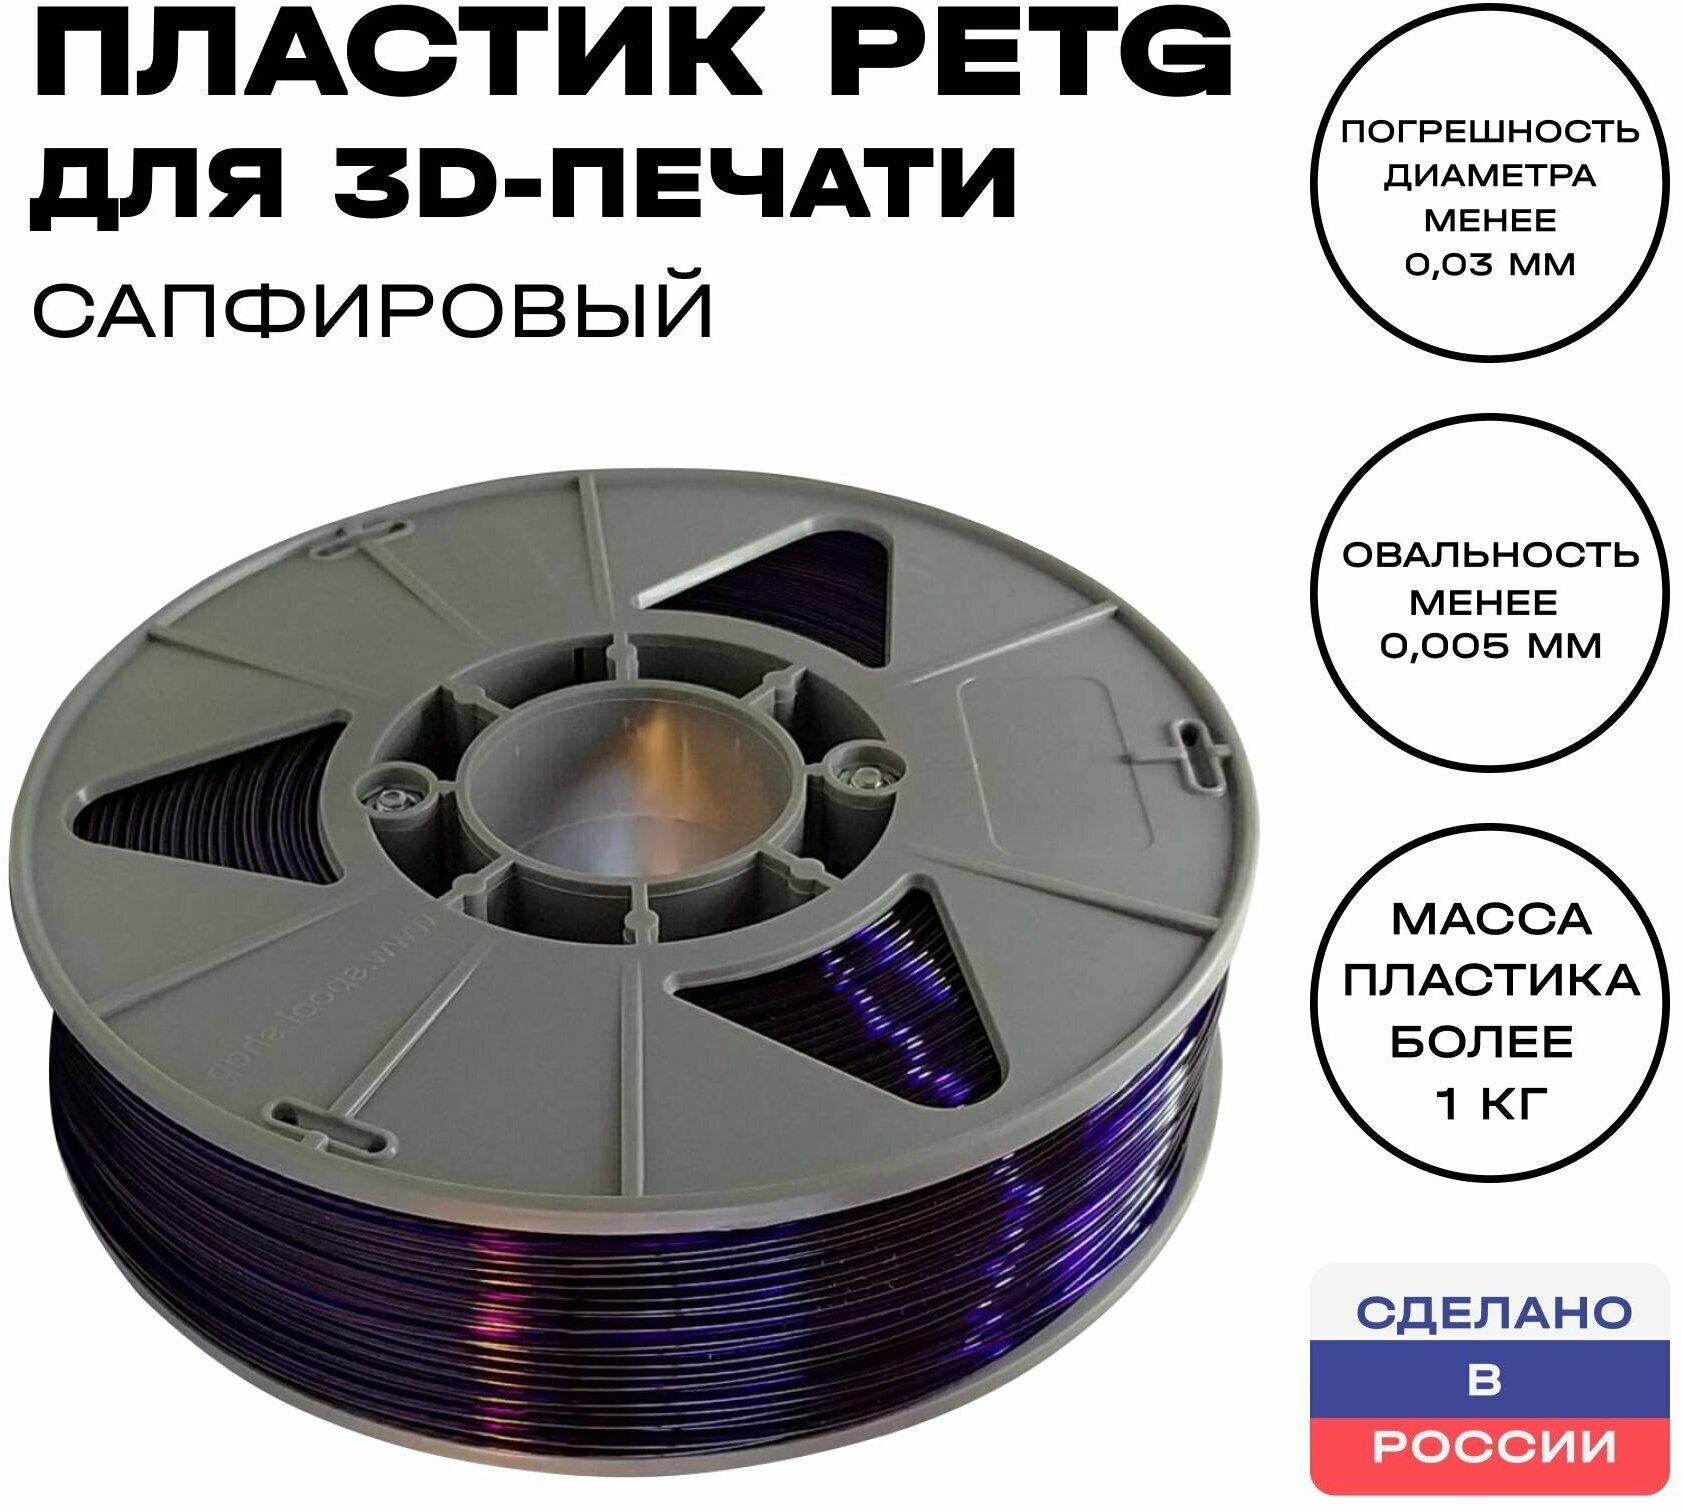 Пластик для 3D принтера PETG ИКЦ, 1,75 мм, 1 кг, сапфировый